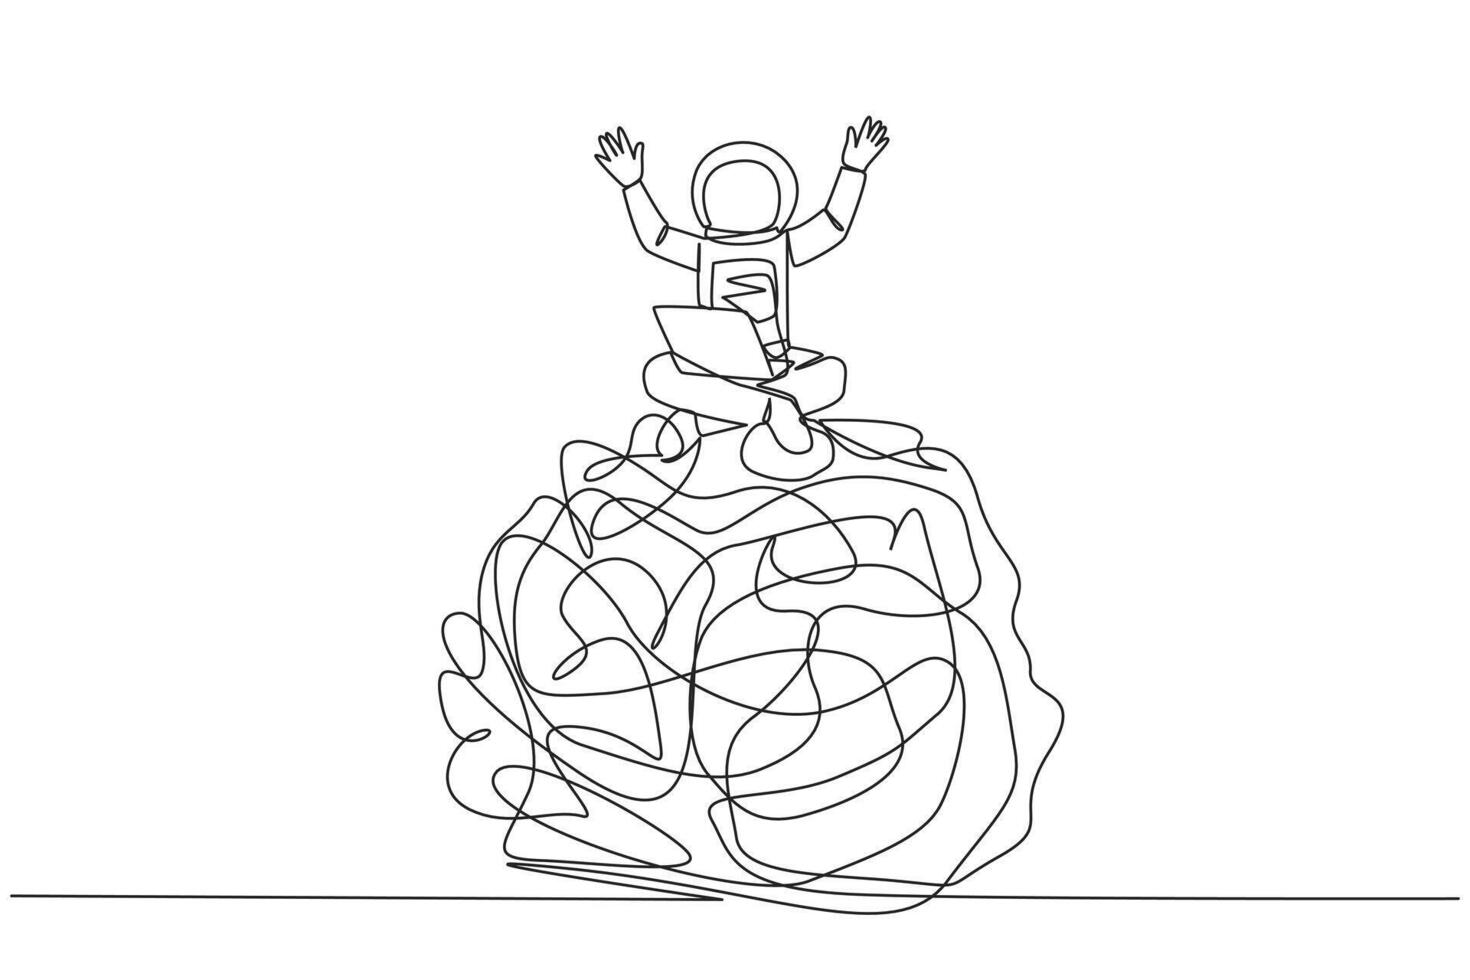 solteiro contínuo linha desenhando jovem astronauta sentado em gigante emaranhado círculo segurando computador portátil levantar ambos mãos. placa do dando acima. com saudades de casa. cosmonauta profundo espaço. 1 linha Projeto vetor ilustração